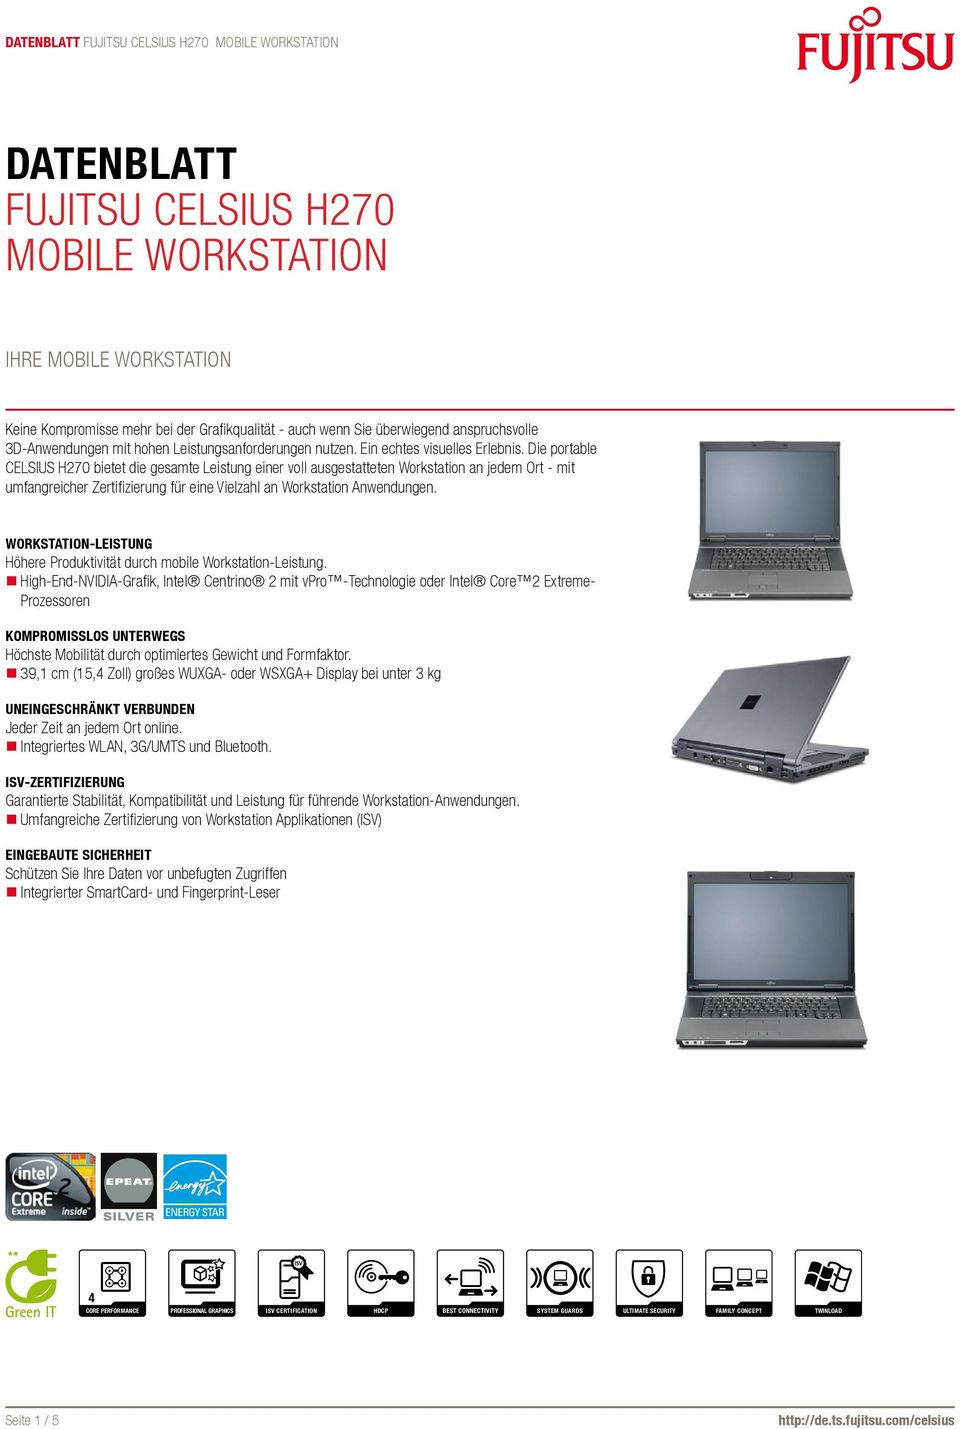 Die portable CELSIUS H270 bietet die gesamte Leistung einer voll ausgestatteten Workstation an jedem Ort - mit umfangreicher Zertifizierung für eine Vielzahl an Workstation Anwendungen.